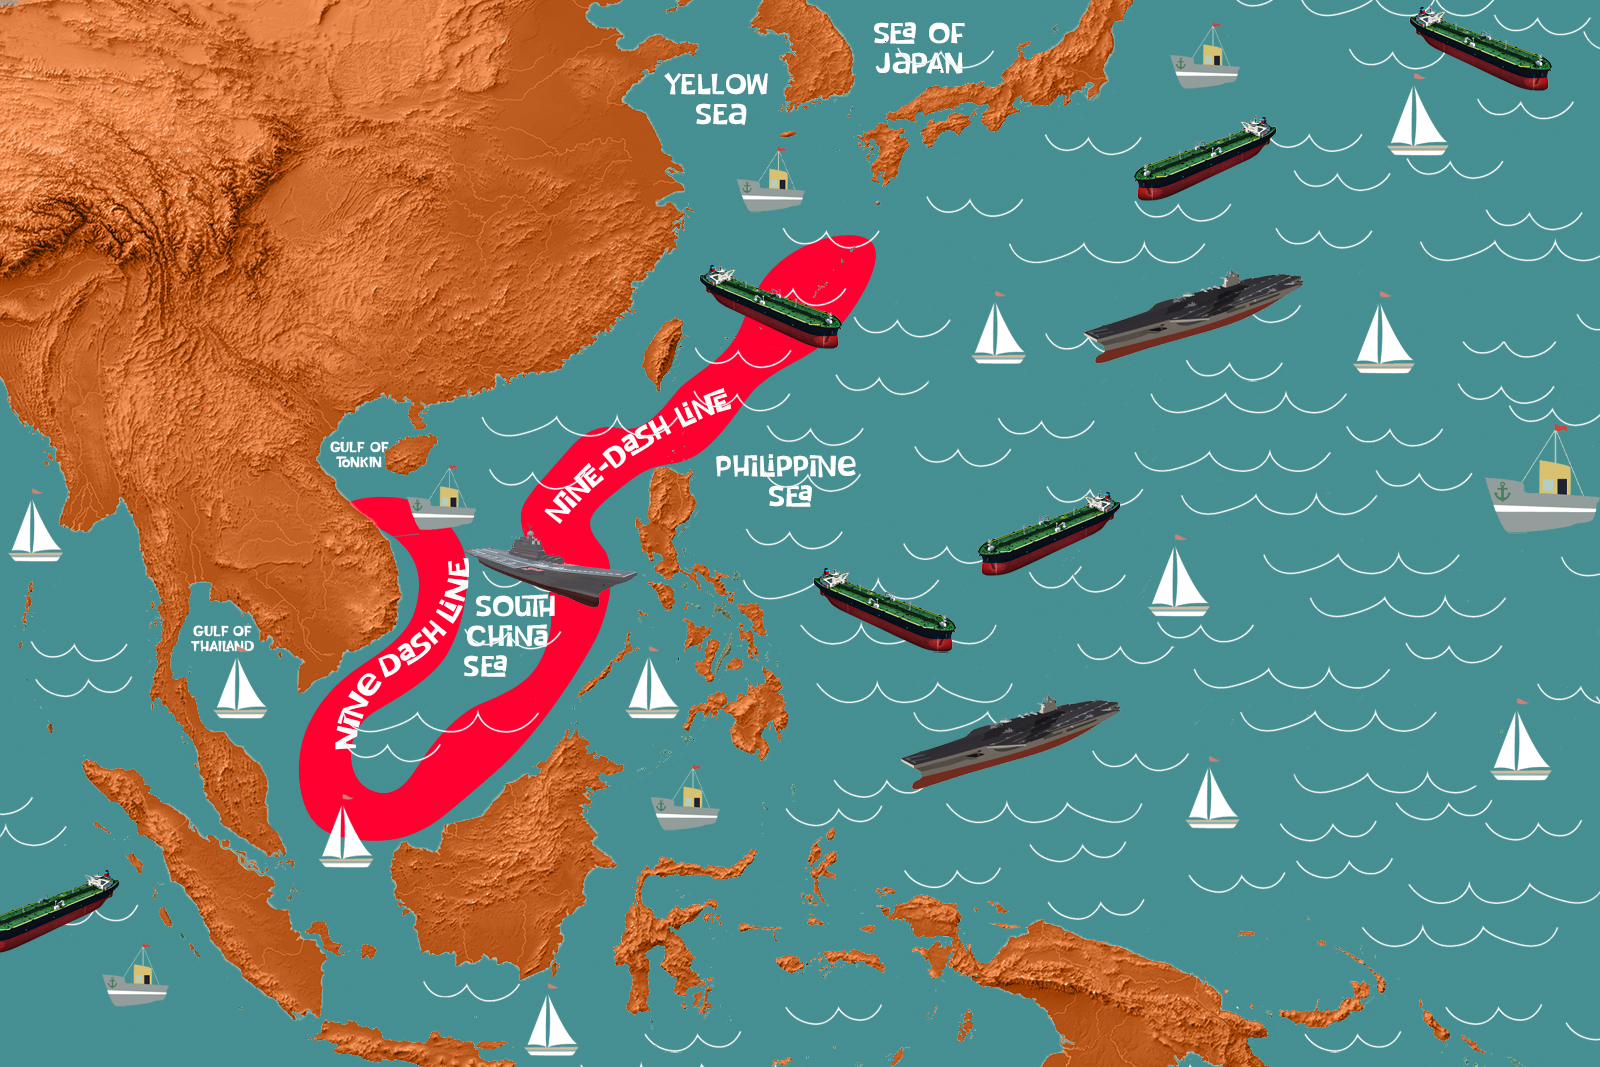 South China Sea map